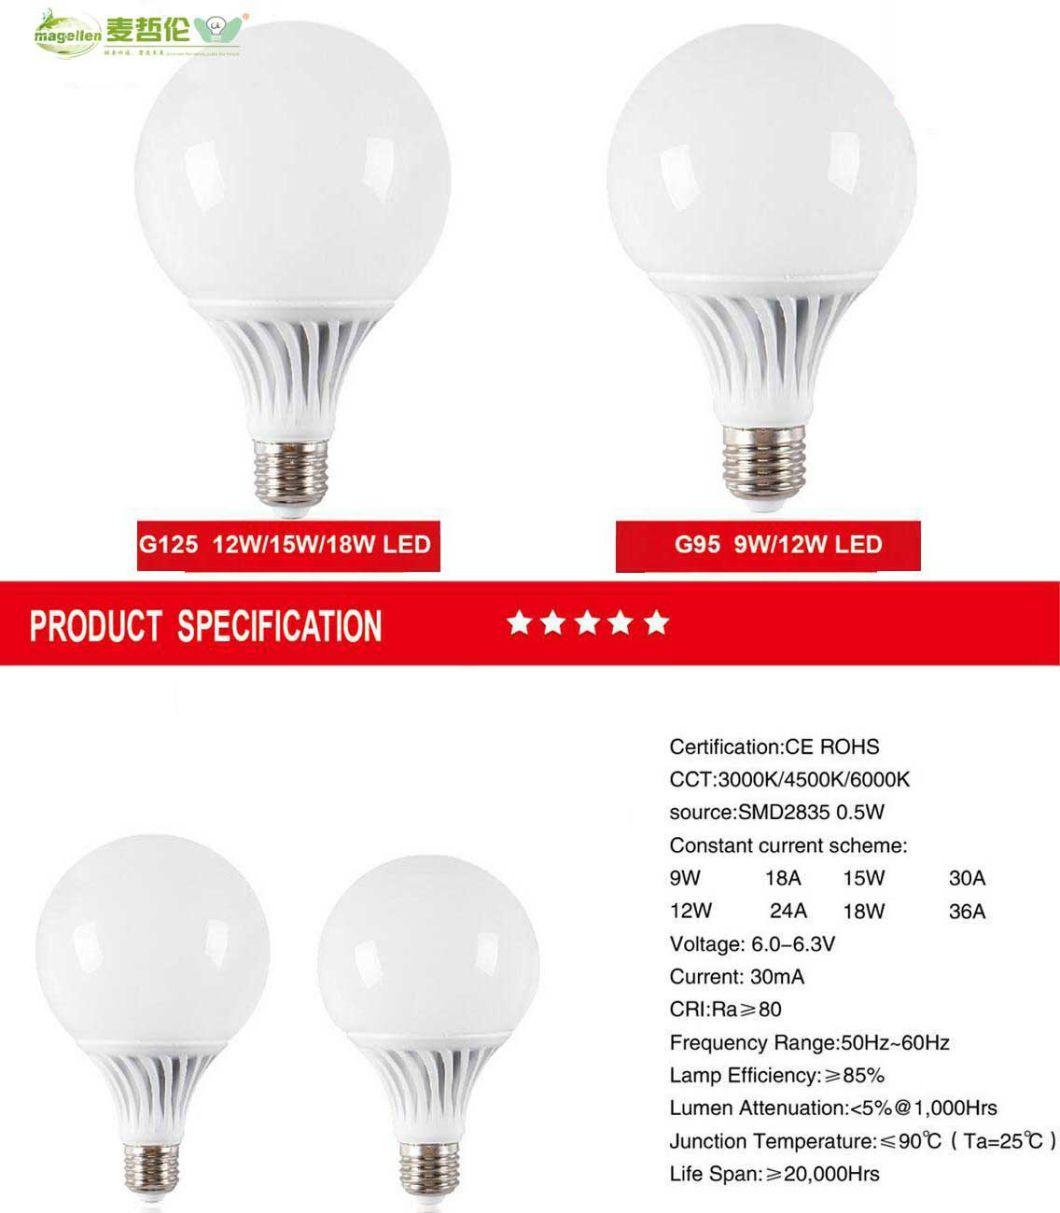 G105 G95 LED Lighting Bulbs, LED Lamp